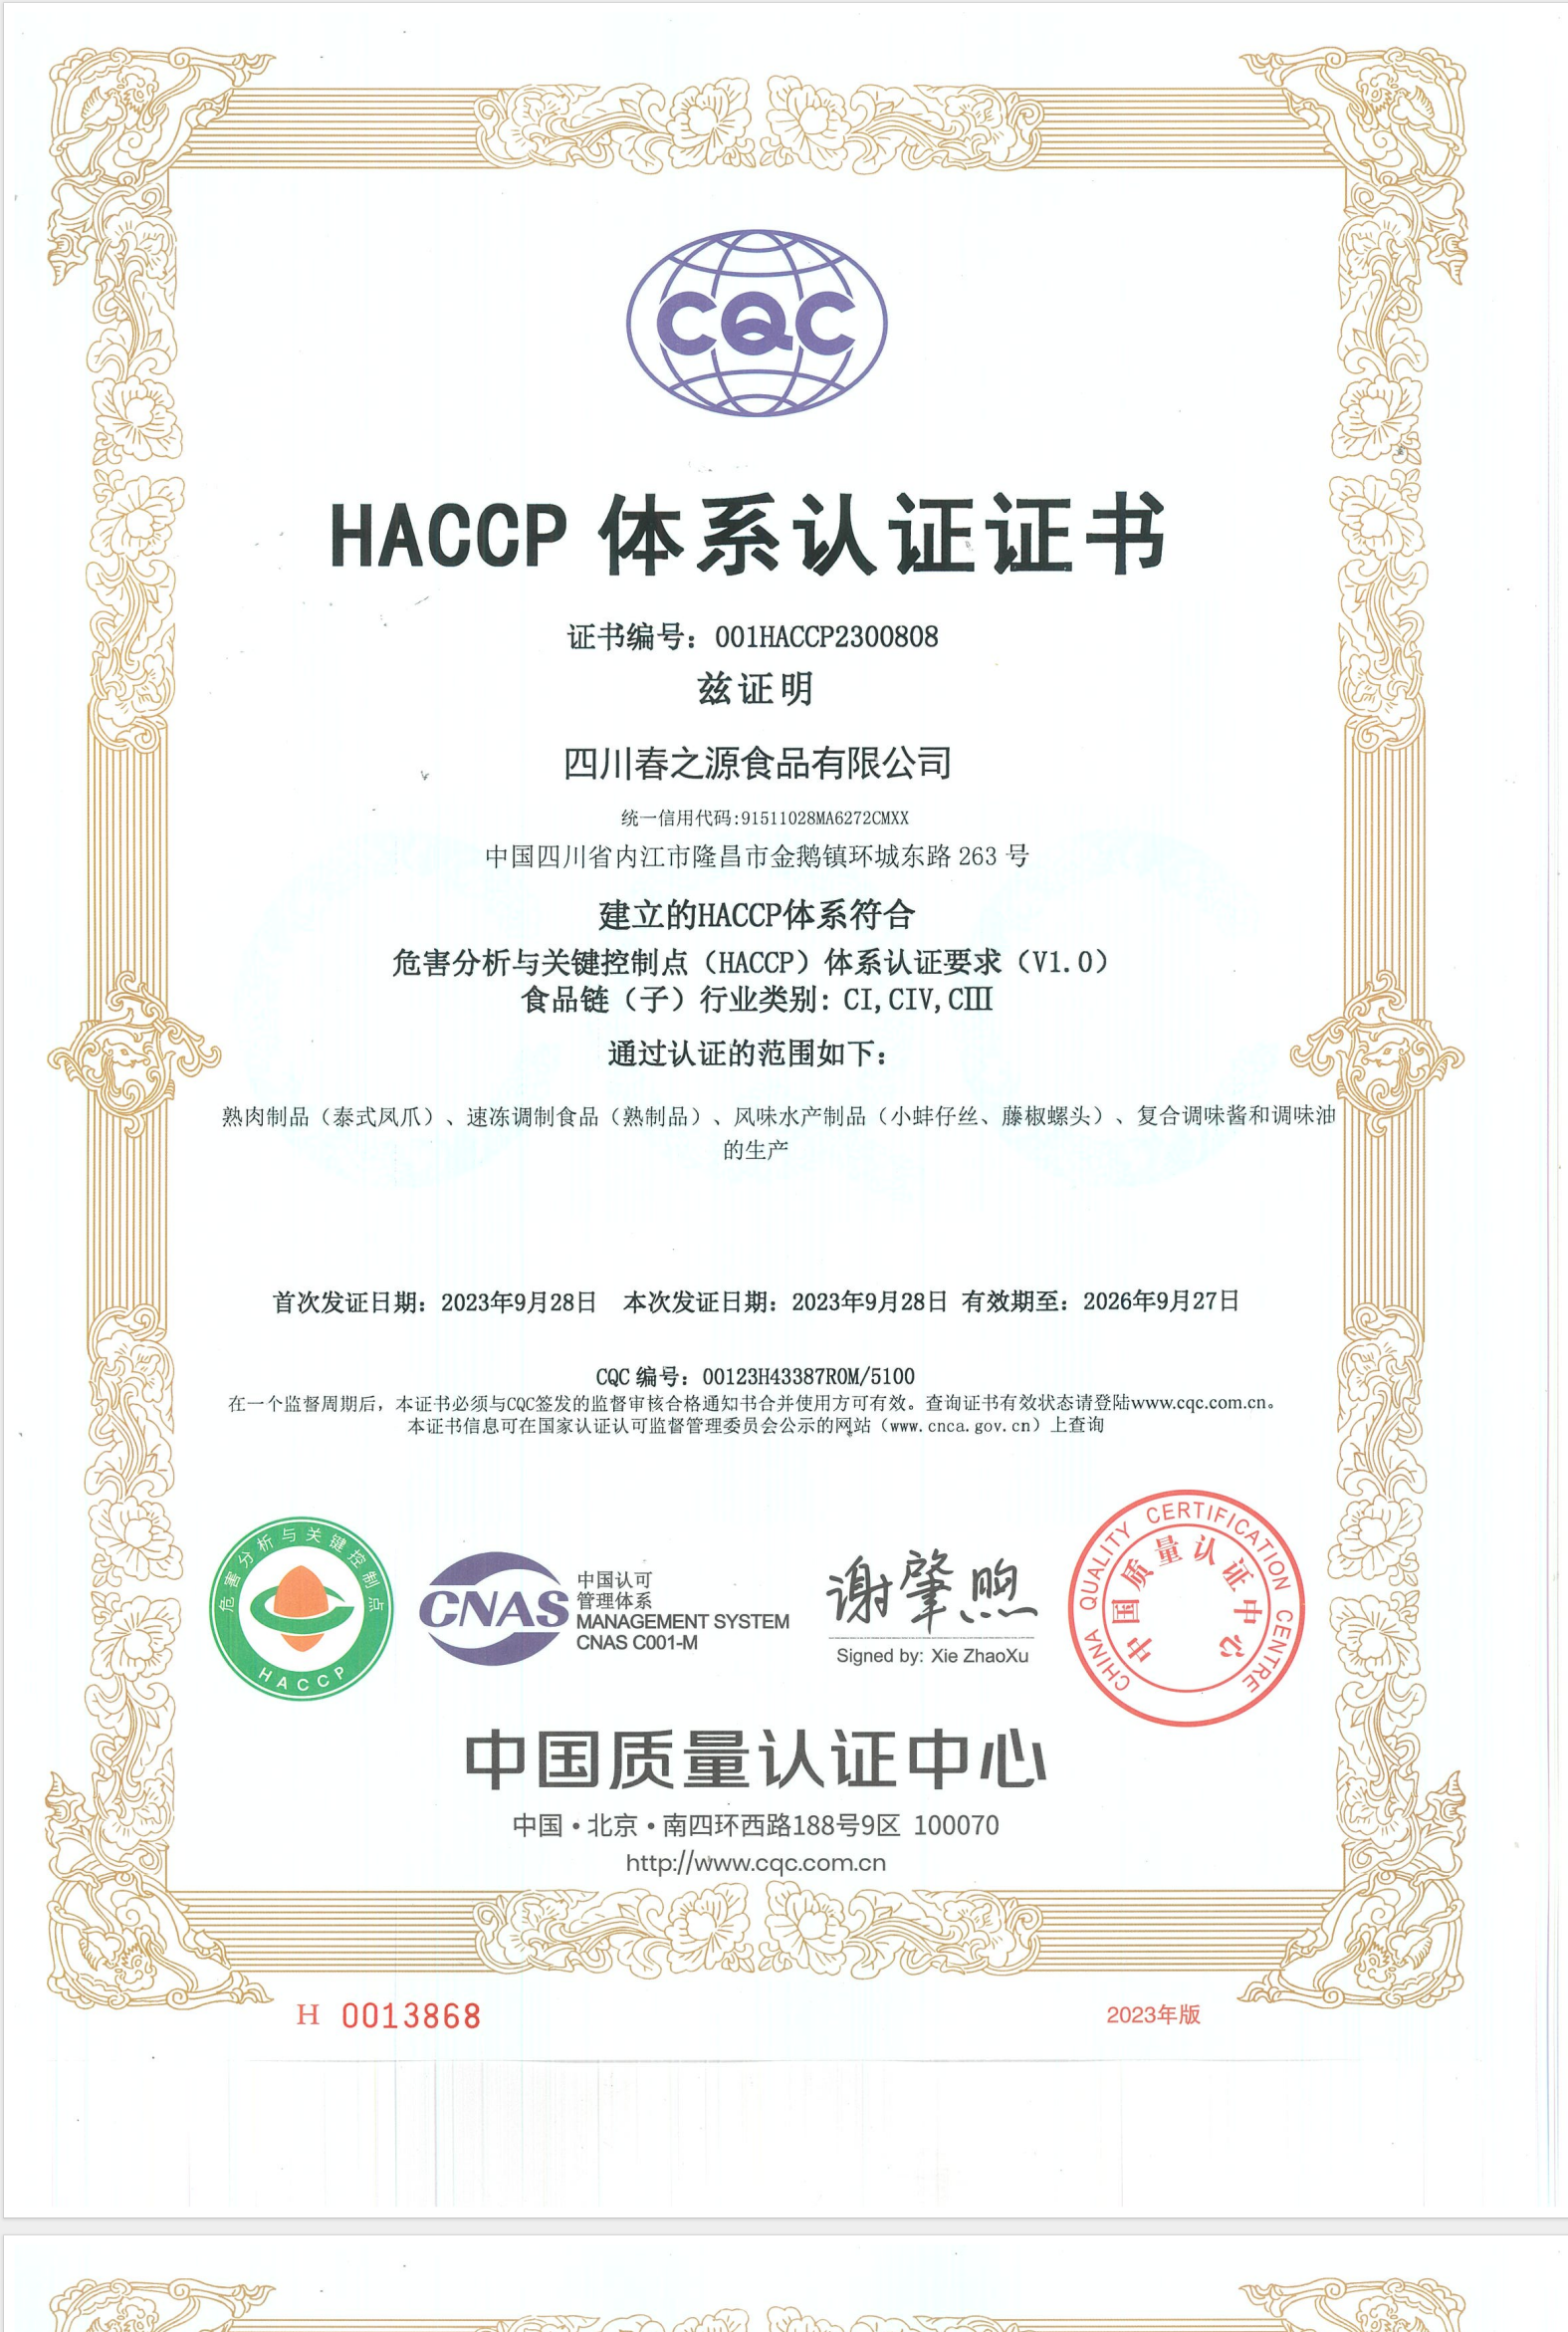 四川春之源食品有限公司通过HACCP体系认证